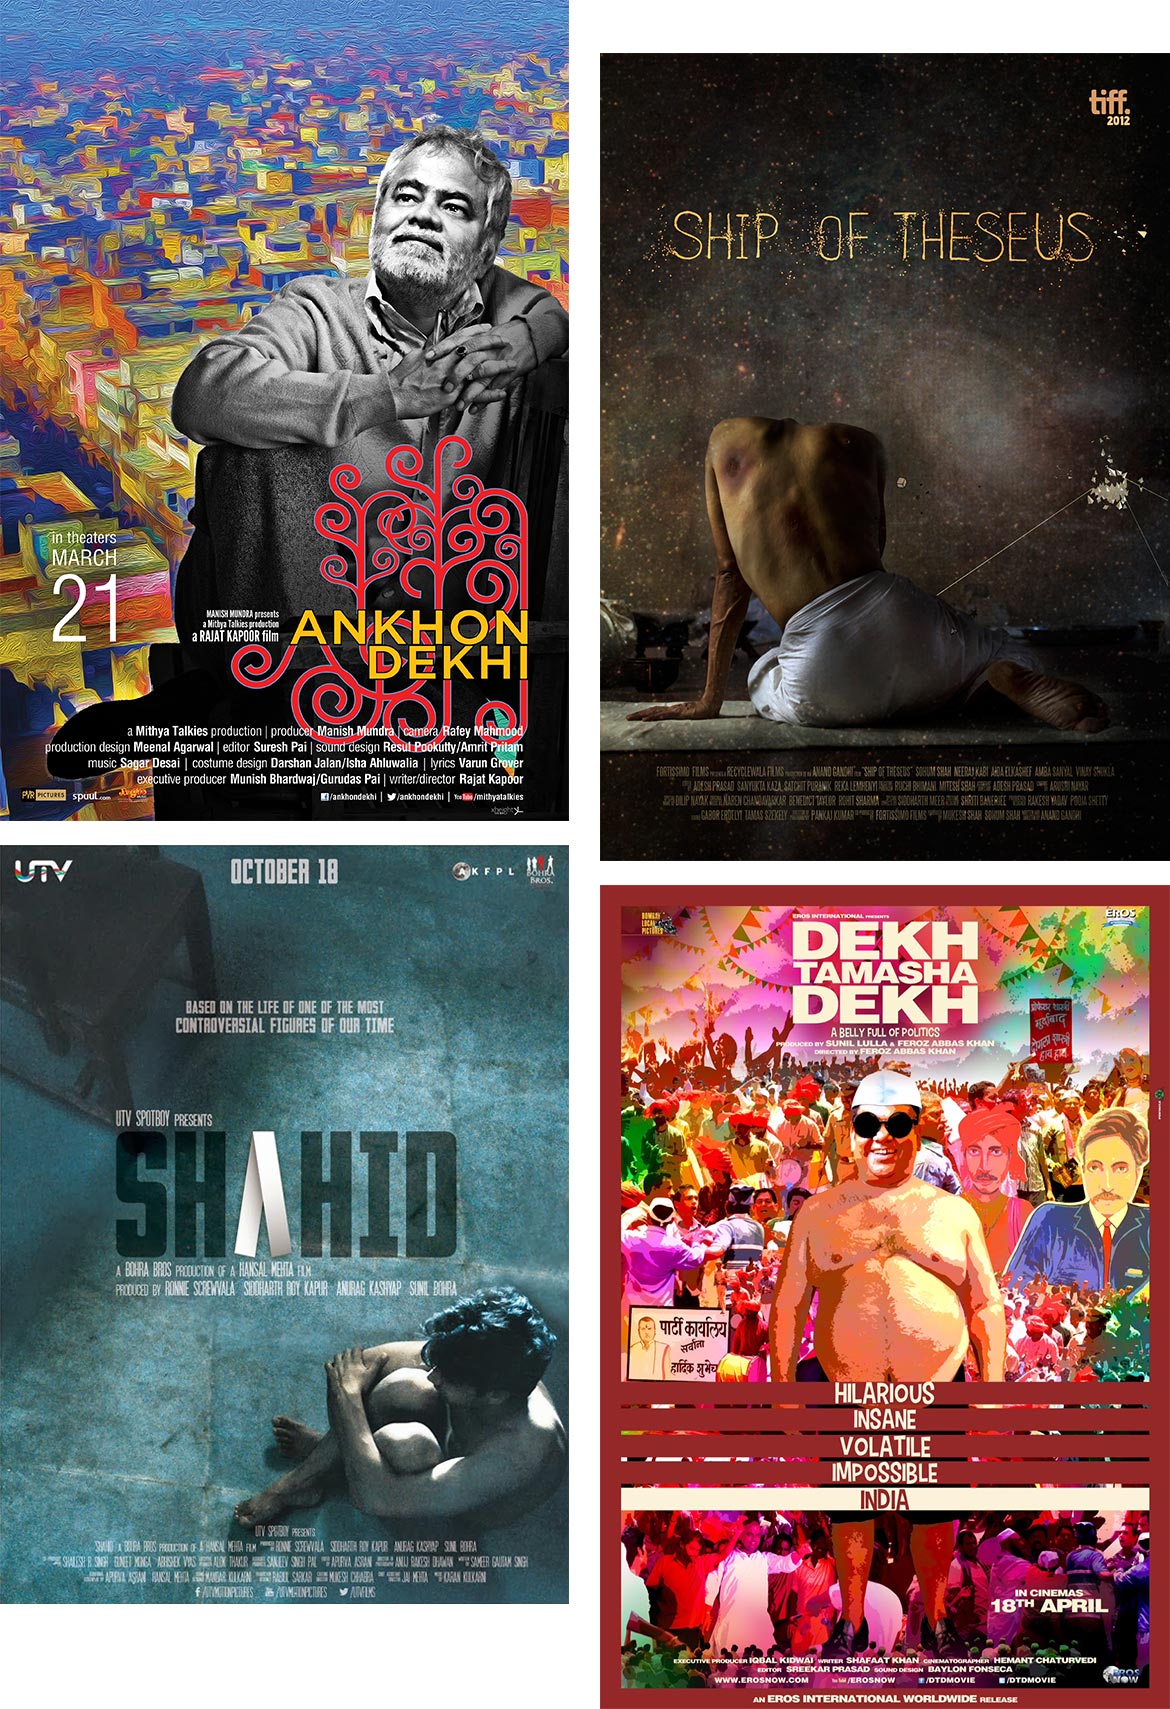 Beyond Bollywood Indie Cinema